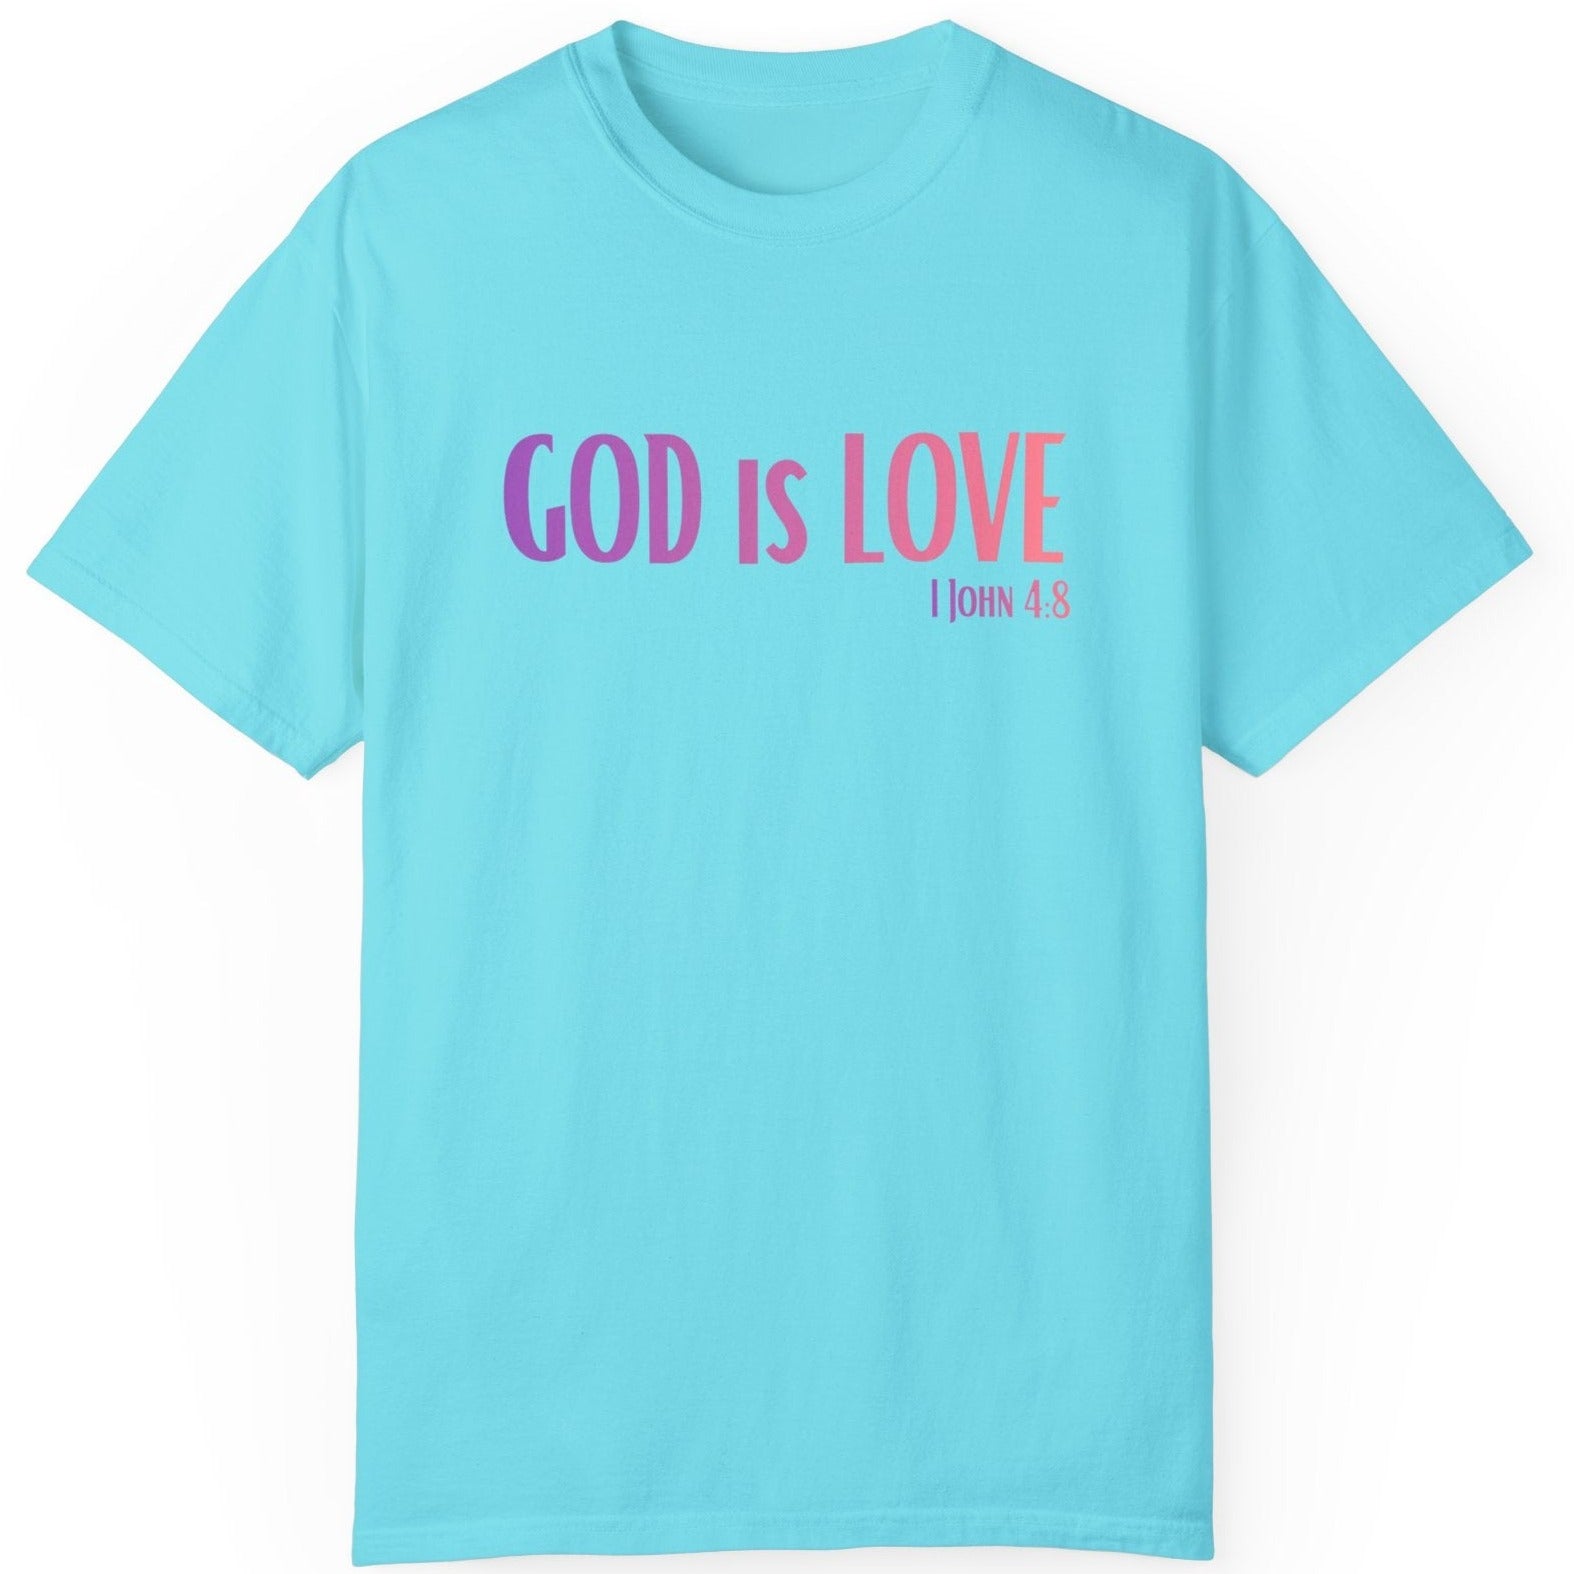 1 John 4:8 God is Love, Christian Garment-Dyed T-shirt for men and women lagoon blue